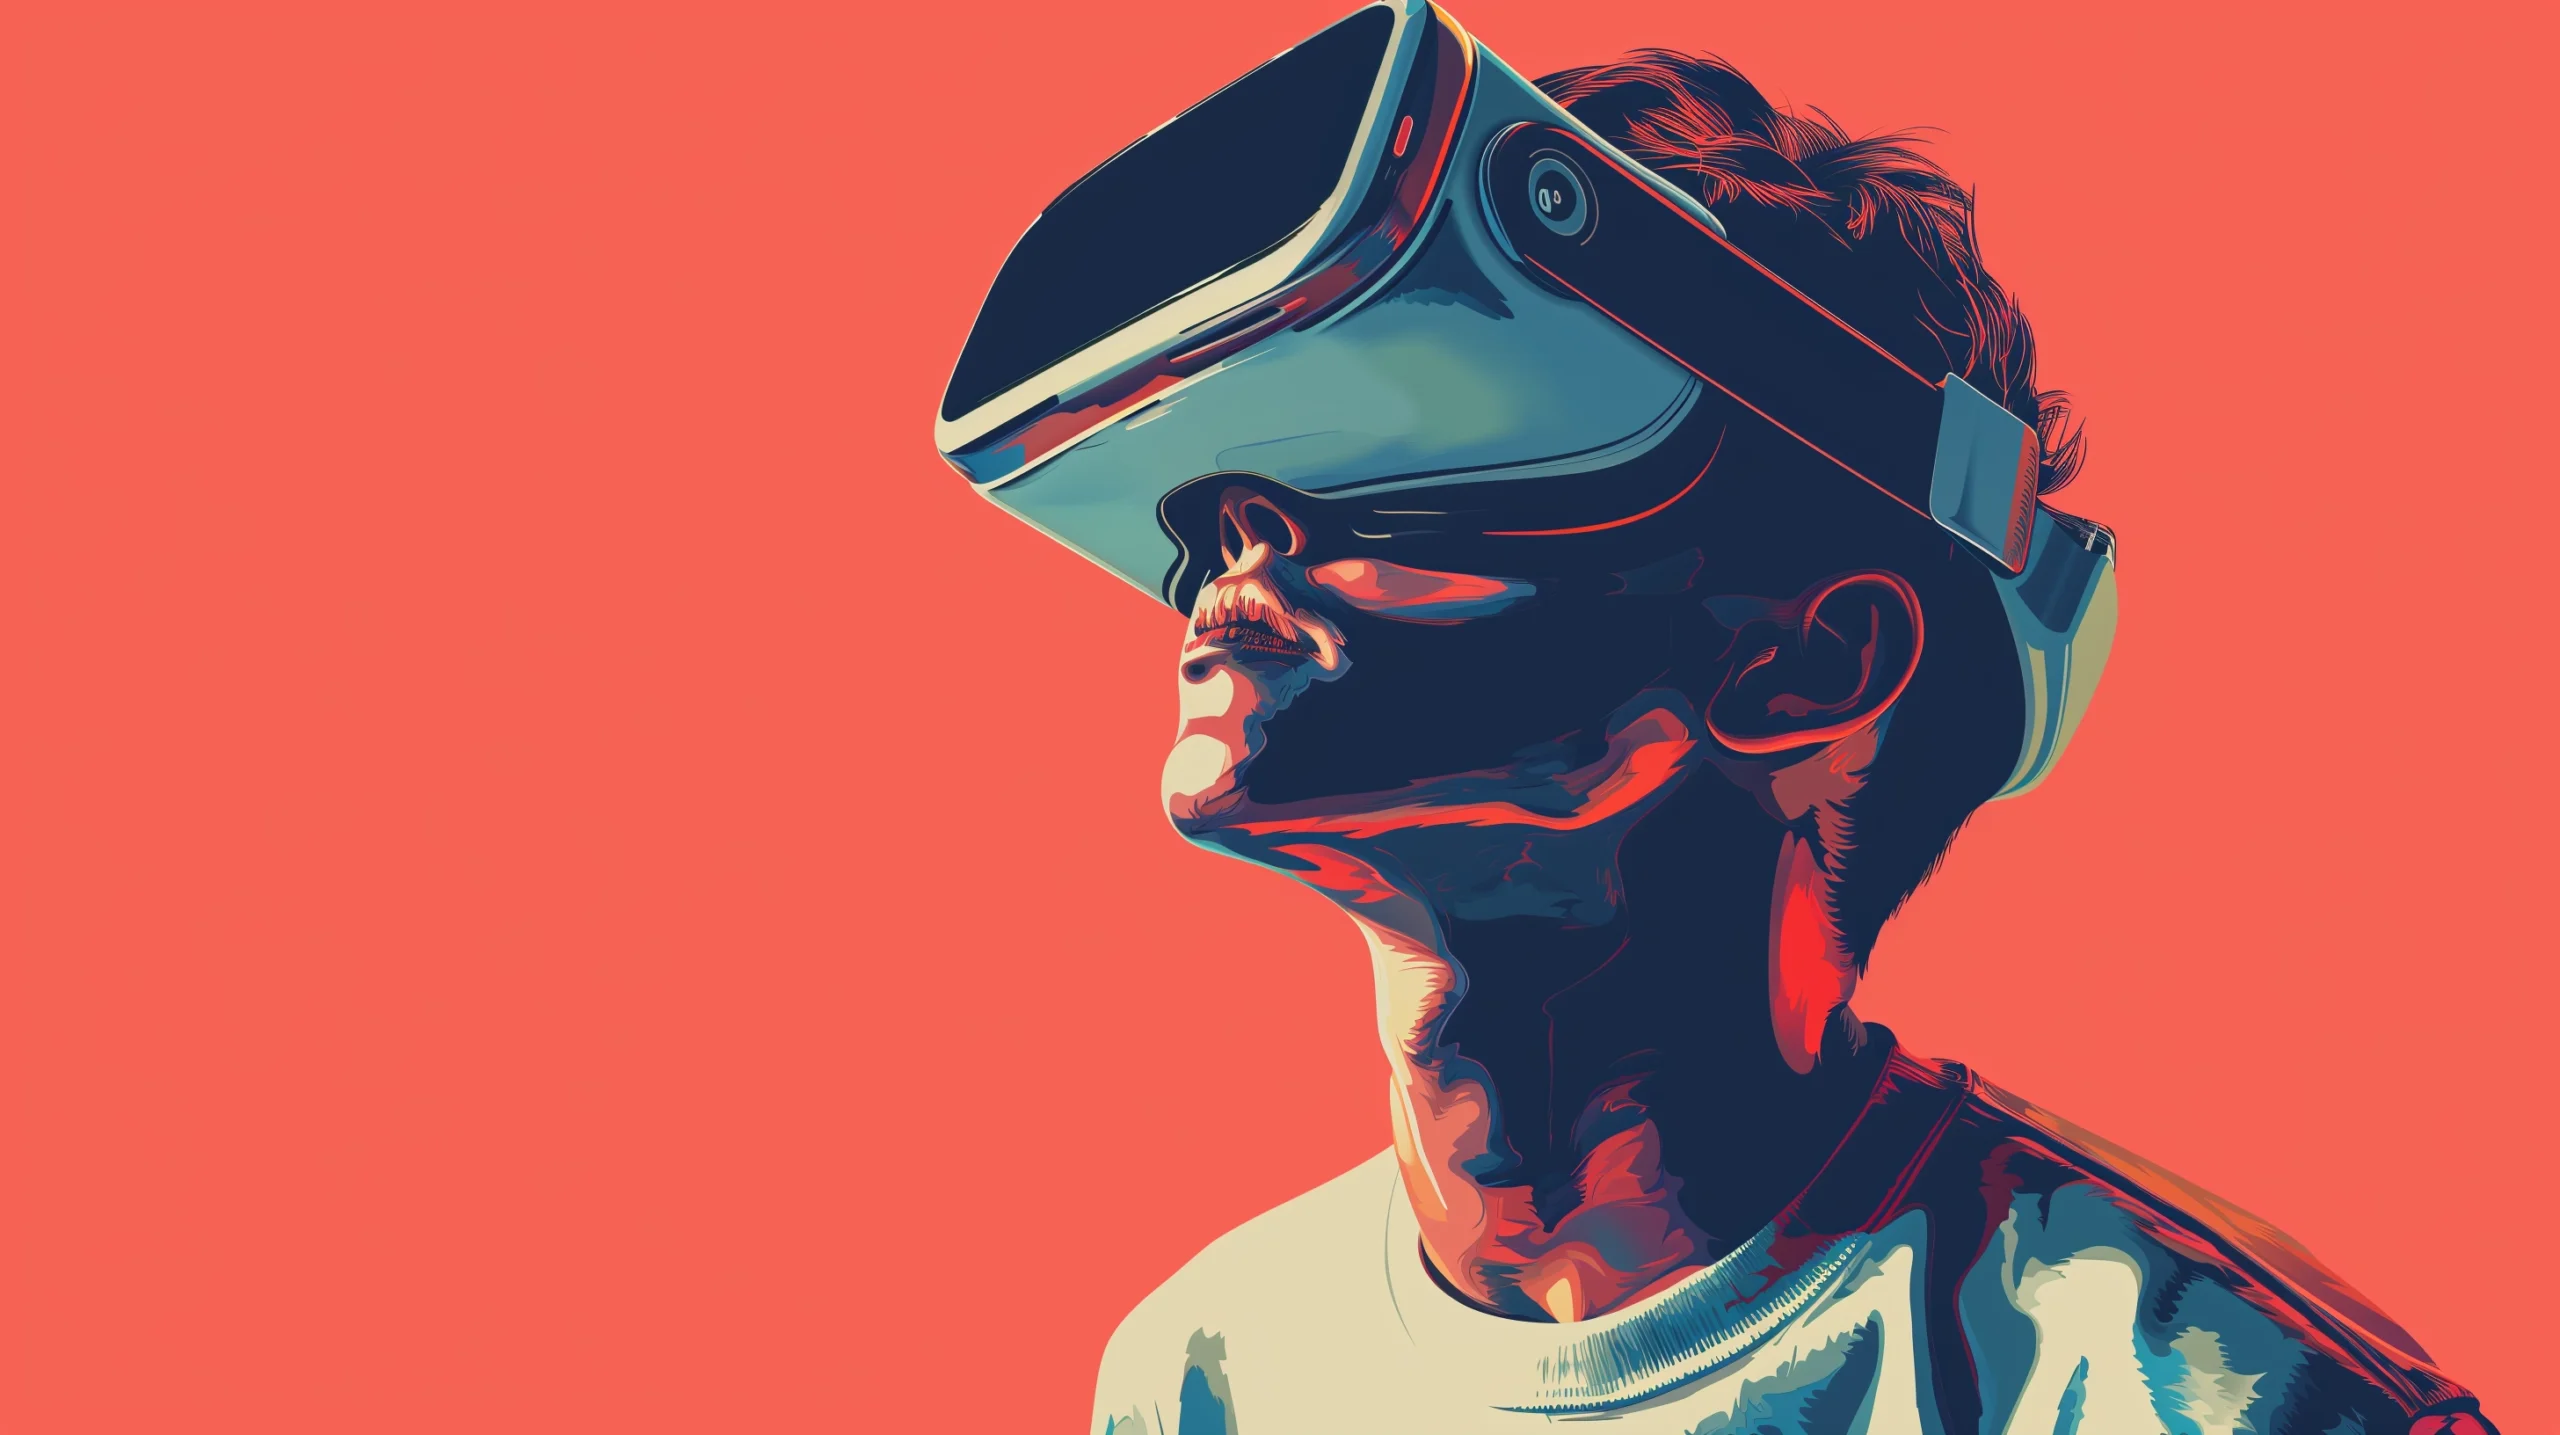 "Perfil de una persona con gafas de realidad virtual en tonos de cian y coral sobre fondo rojo."<br />
